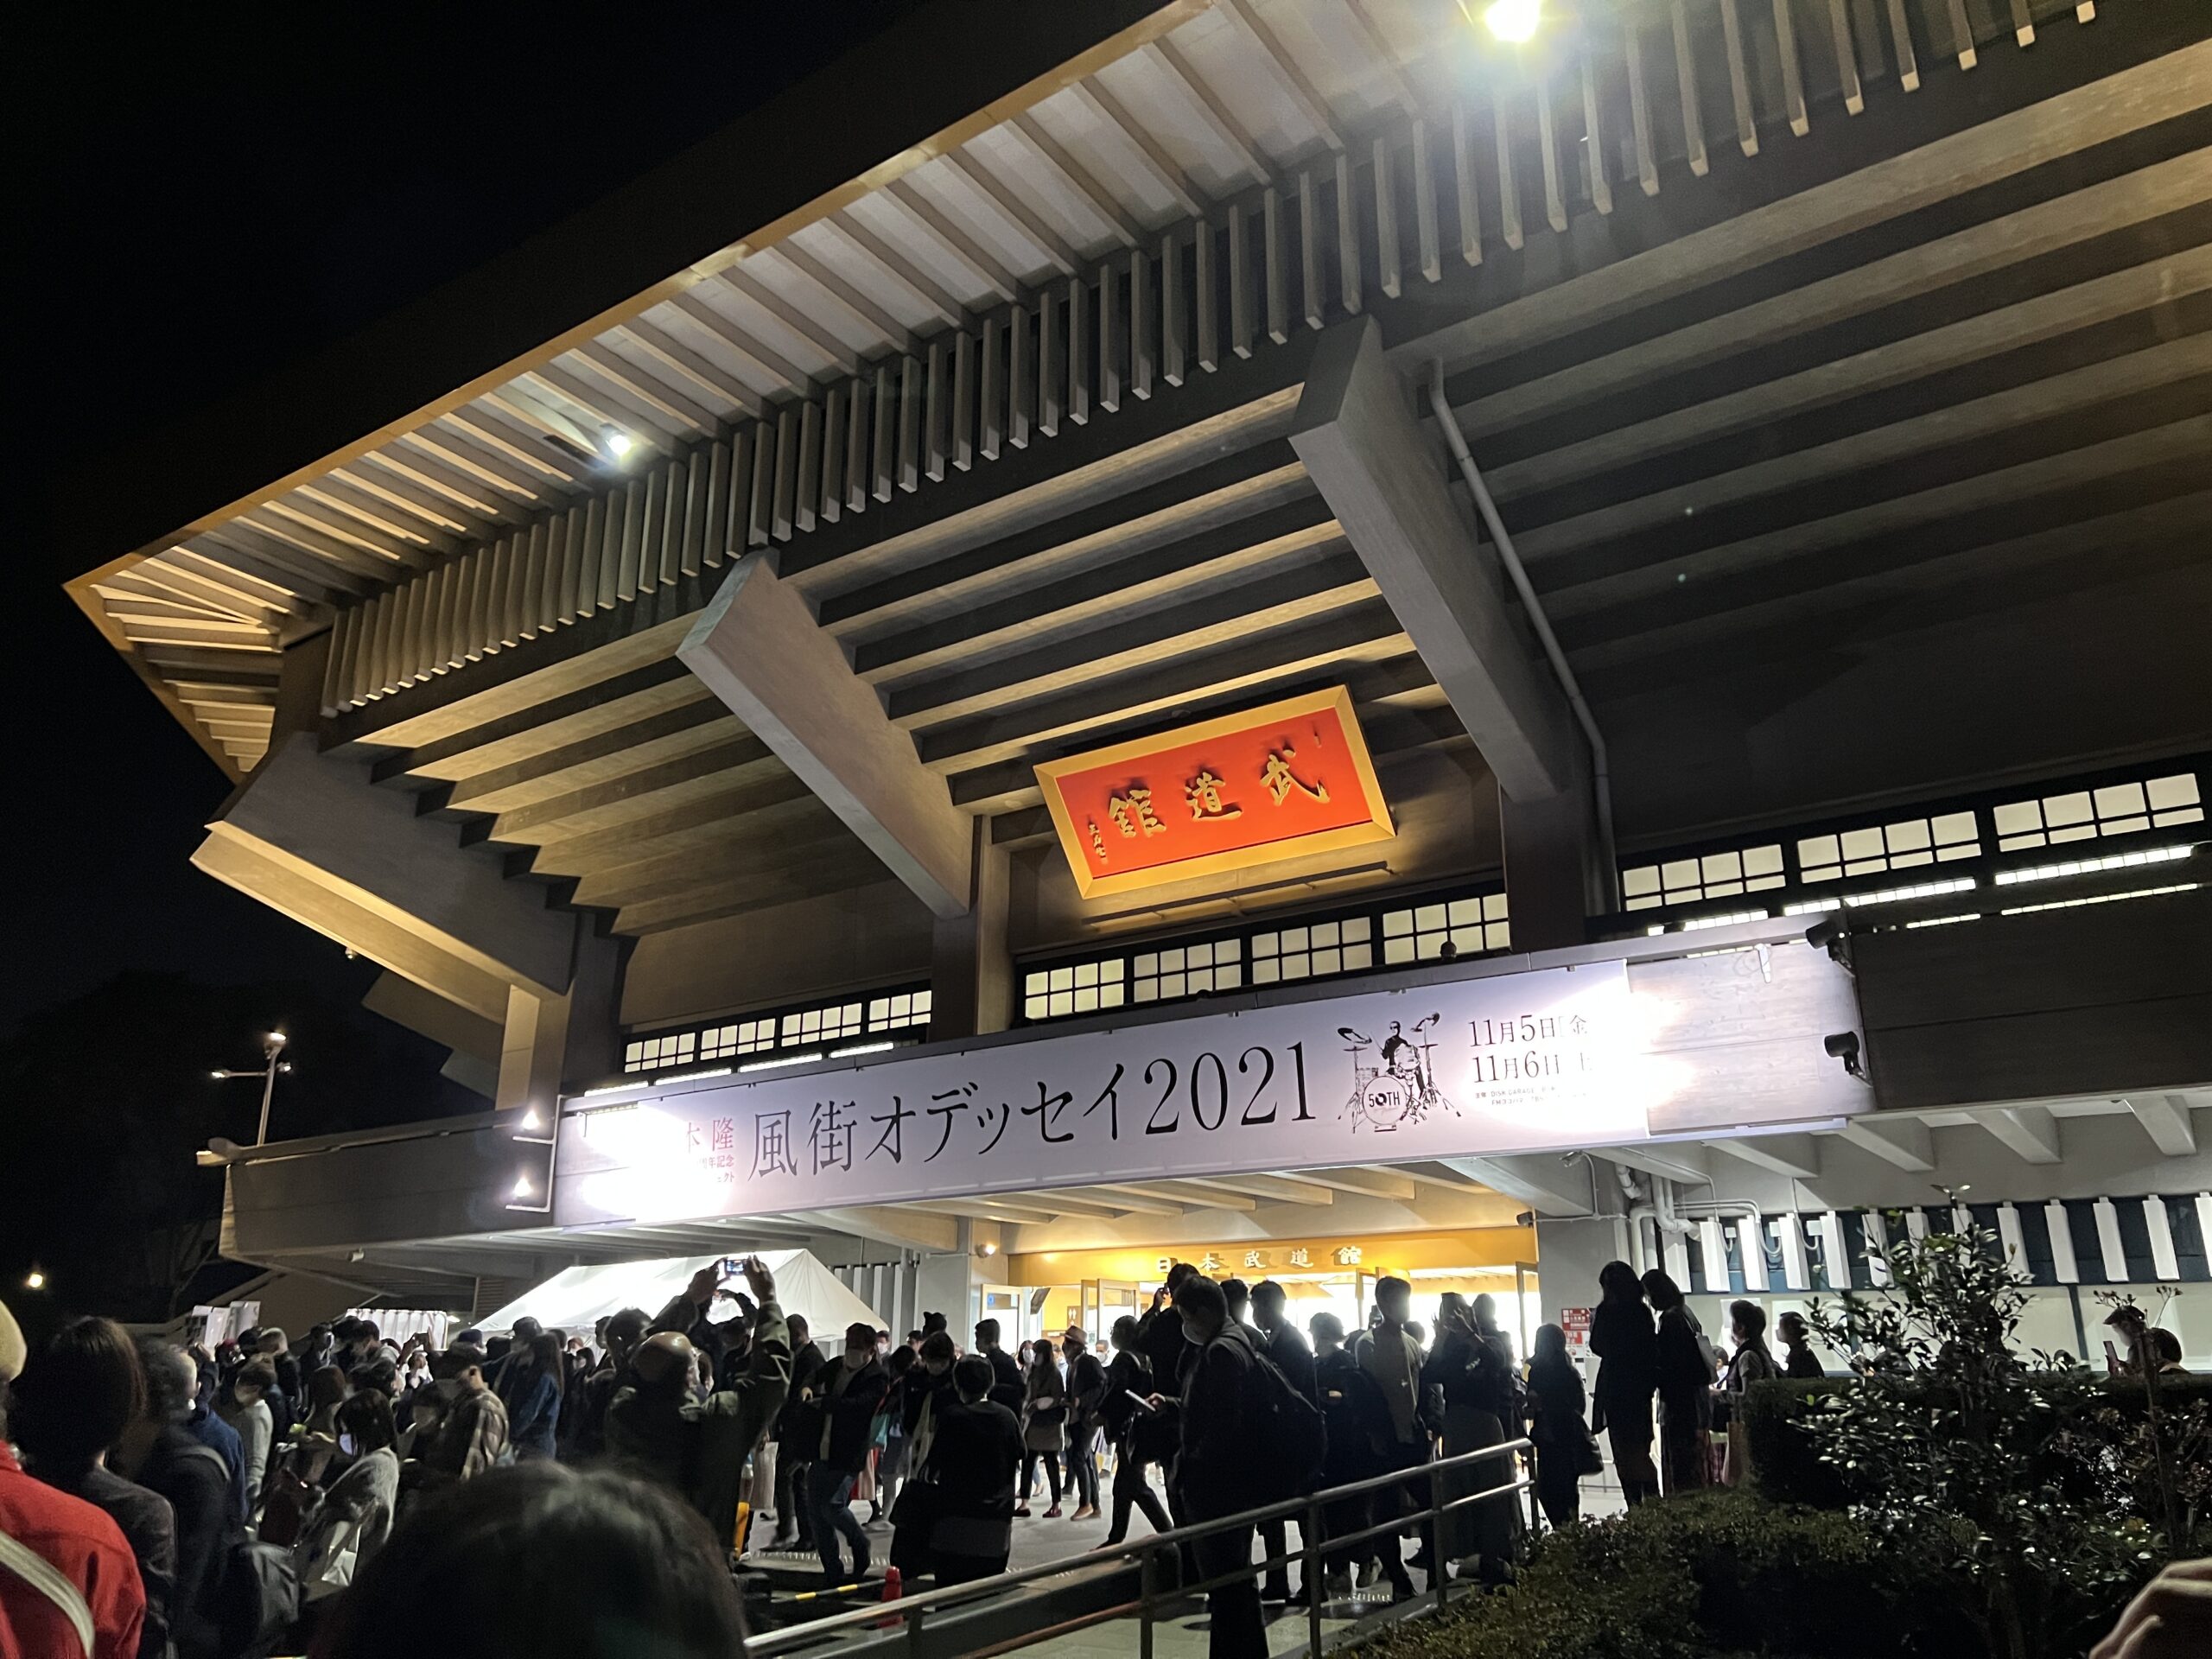 『～松本 隆 作詞活動50周年記念 オフィシャル・プロジェクト！～ 風街オデッセイ2021』の会場・日本武道館の外観写真